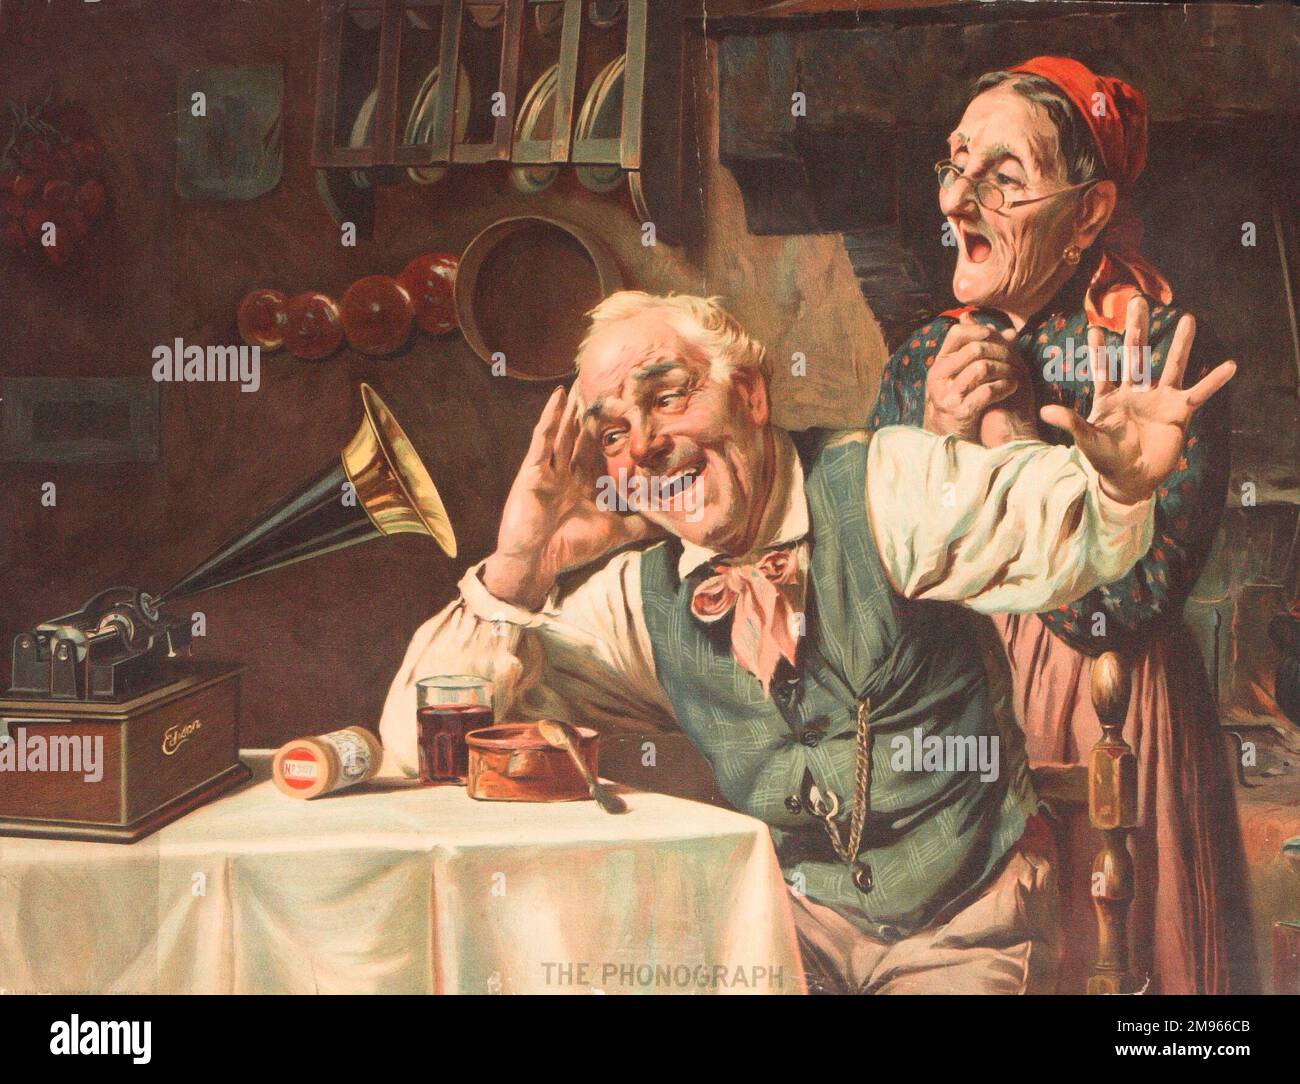 Illustrazione che mostra una coppia di giovani anziani che si gode i suoni di una nuova invenzione - il fonografo. I cilindri di cera possono essere visti sulla tabella dalla macchina. Foto Stock